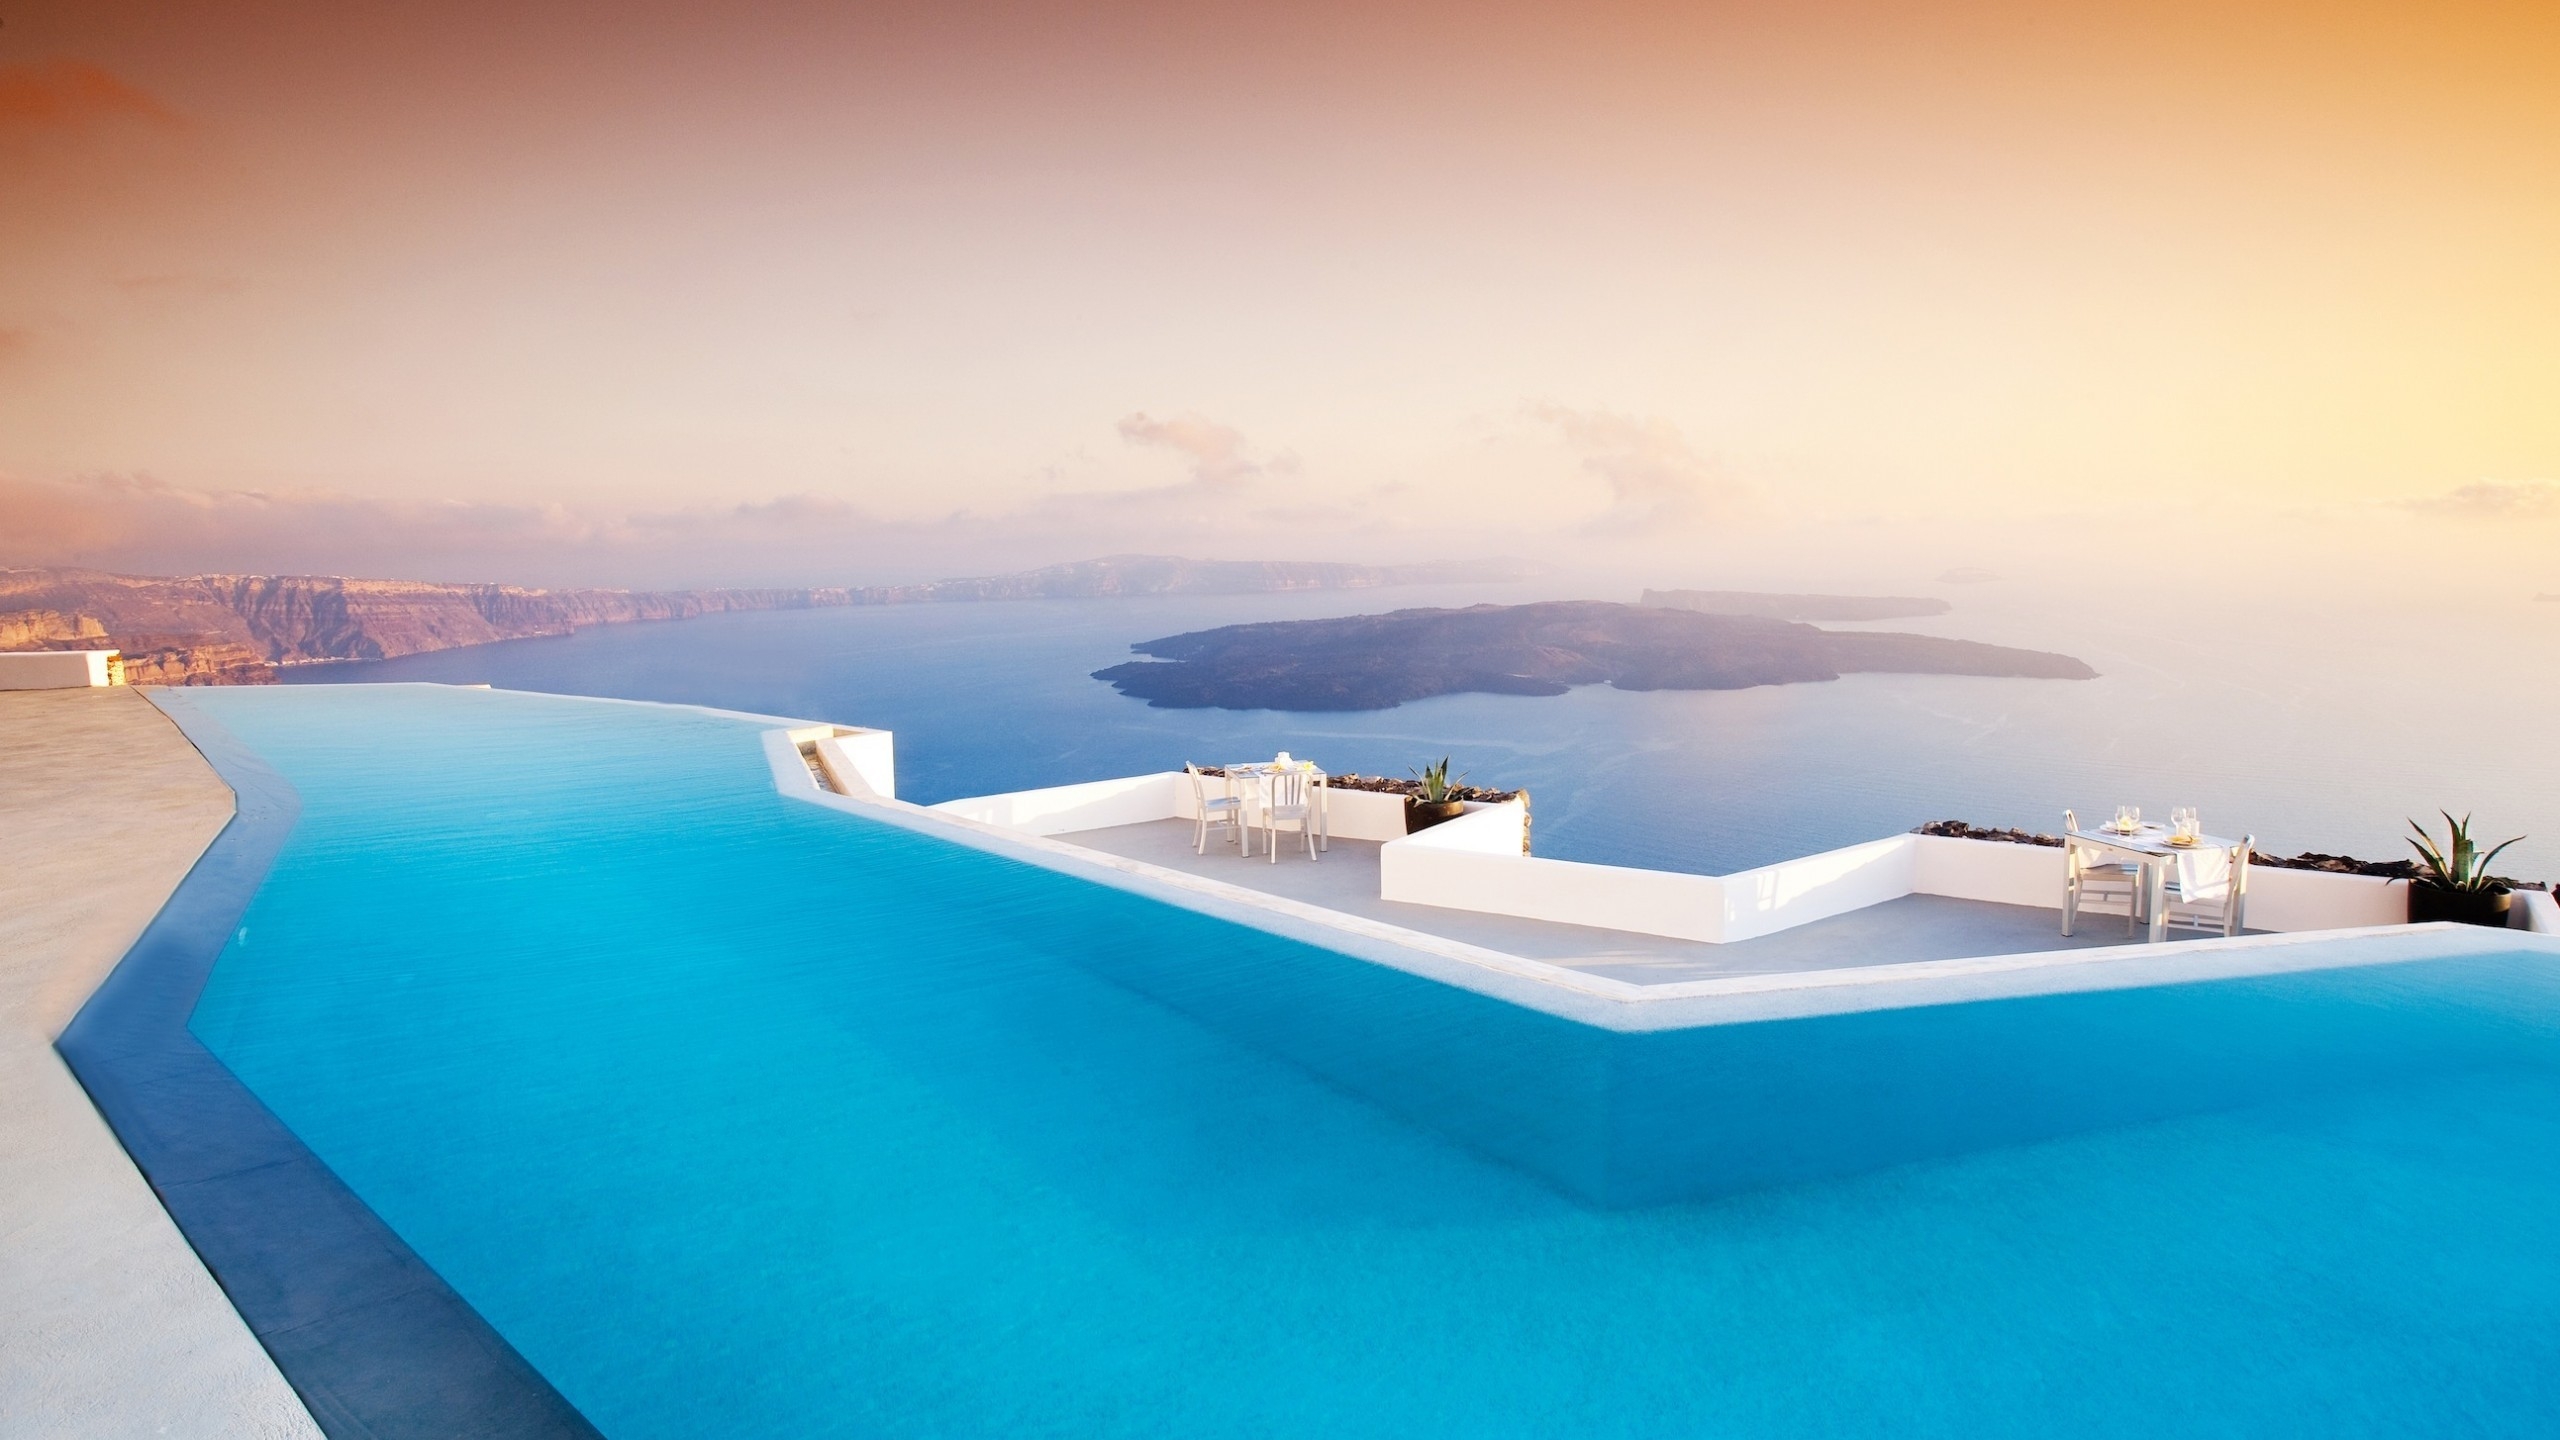 Santorini Pool for 2560x1440 HDTV resolution